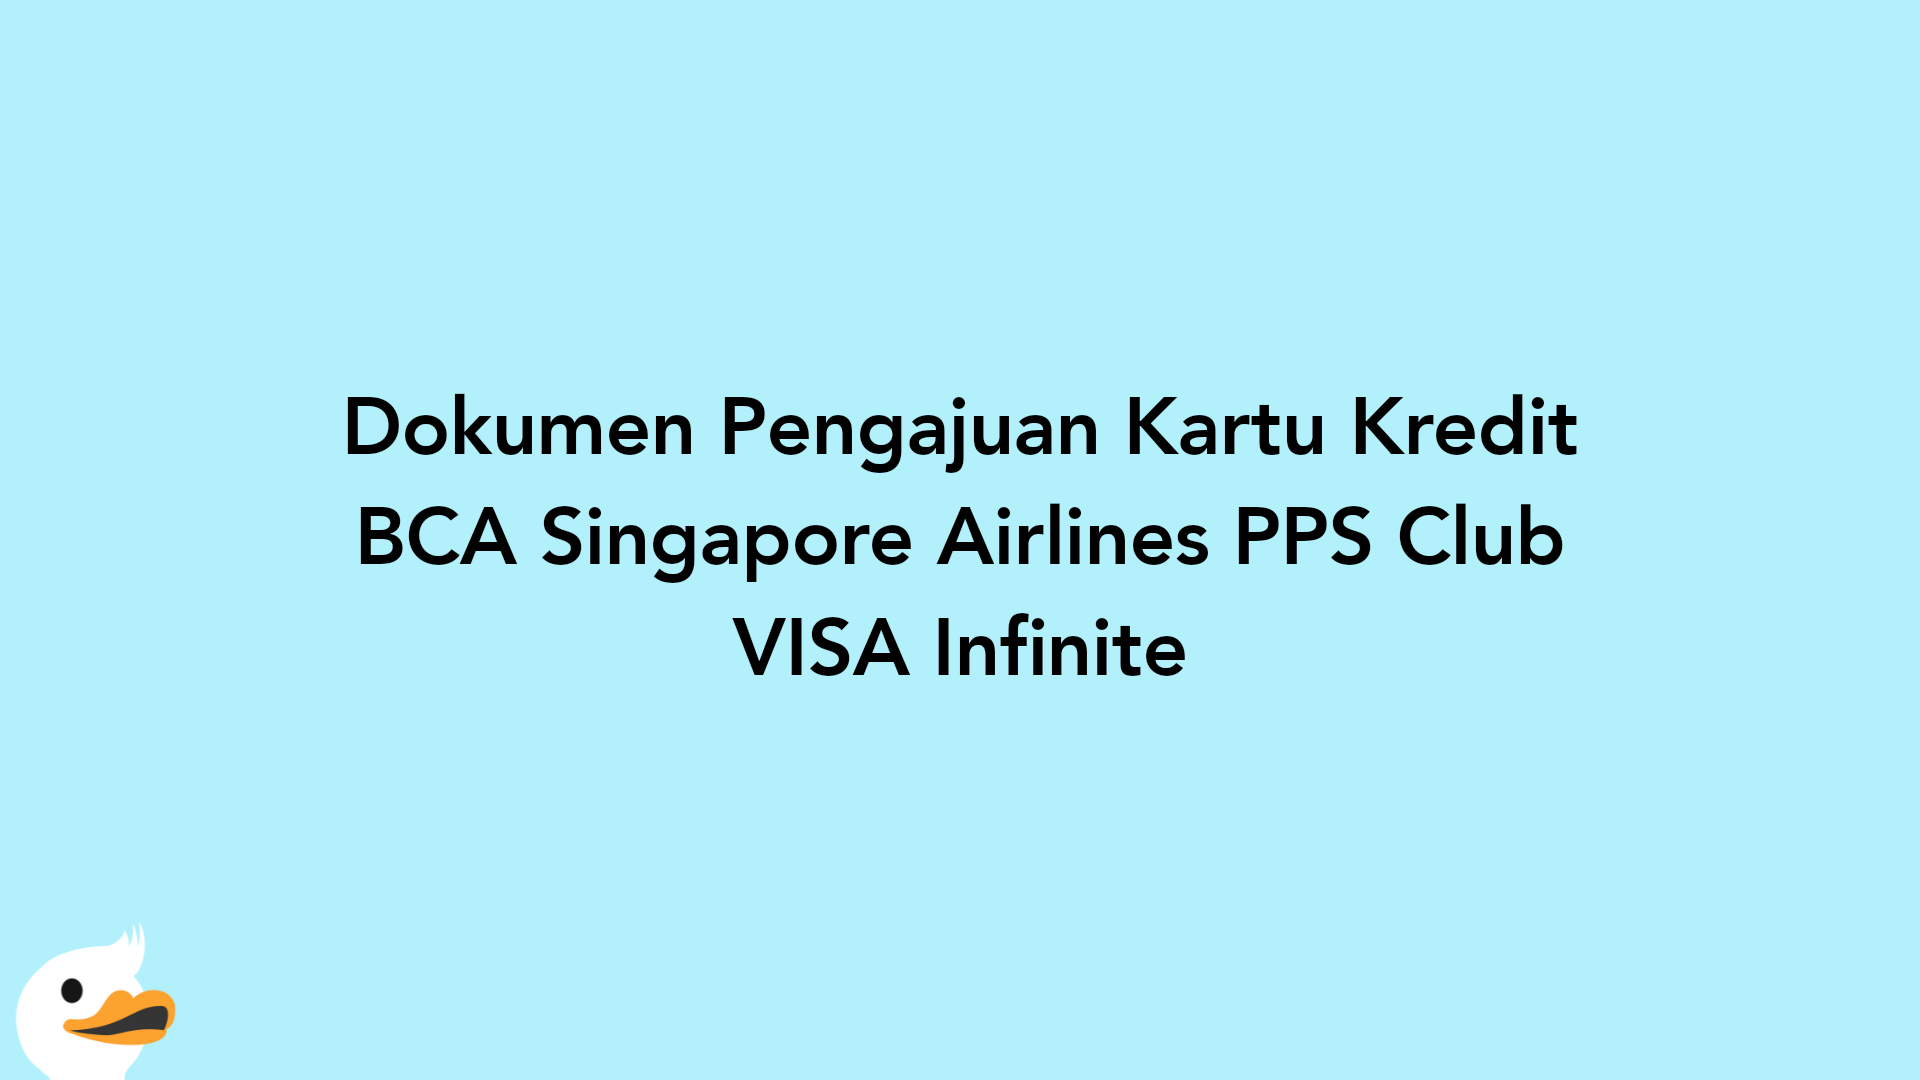 Dokumen Pengajuan Kartu Kredit BCA Singapore Airlines PPS Club VISA Infinite